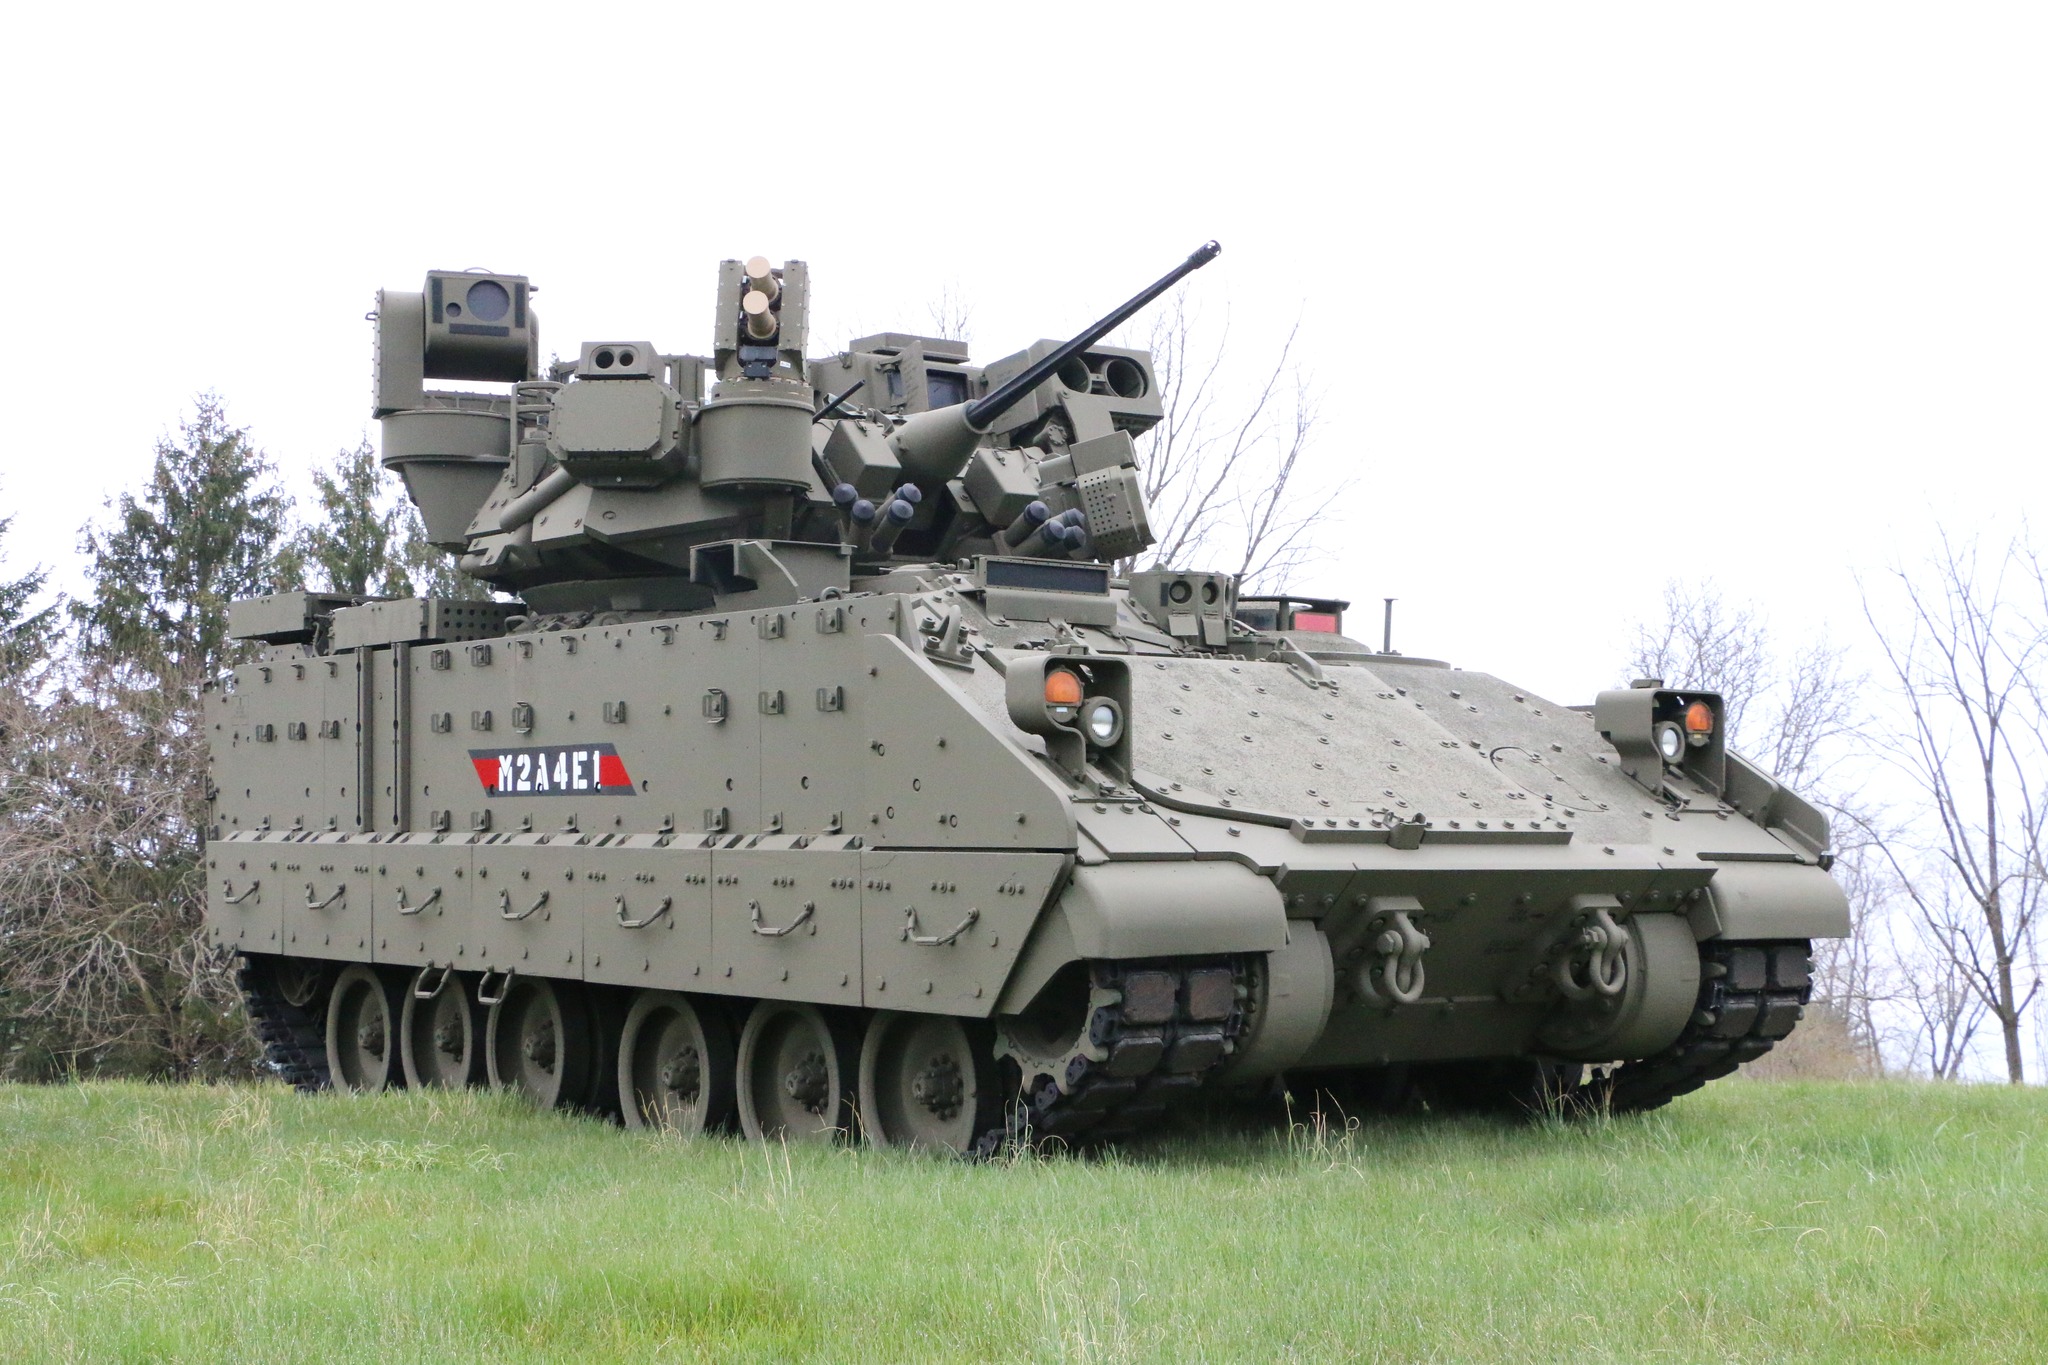 USA vil kjøpe Bradley infanterikampvogner i en ny M2A4E1-variant med forbedrede kontroll- og forsvarssystemer